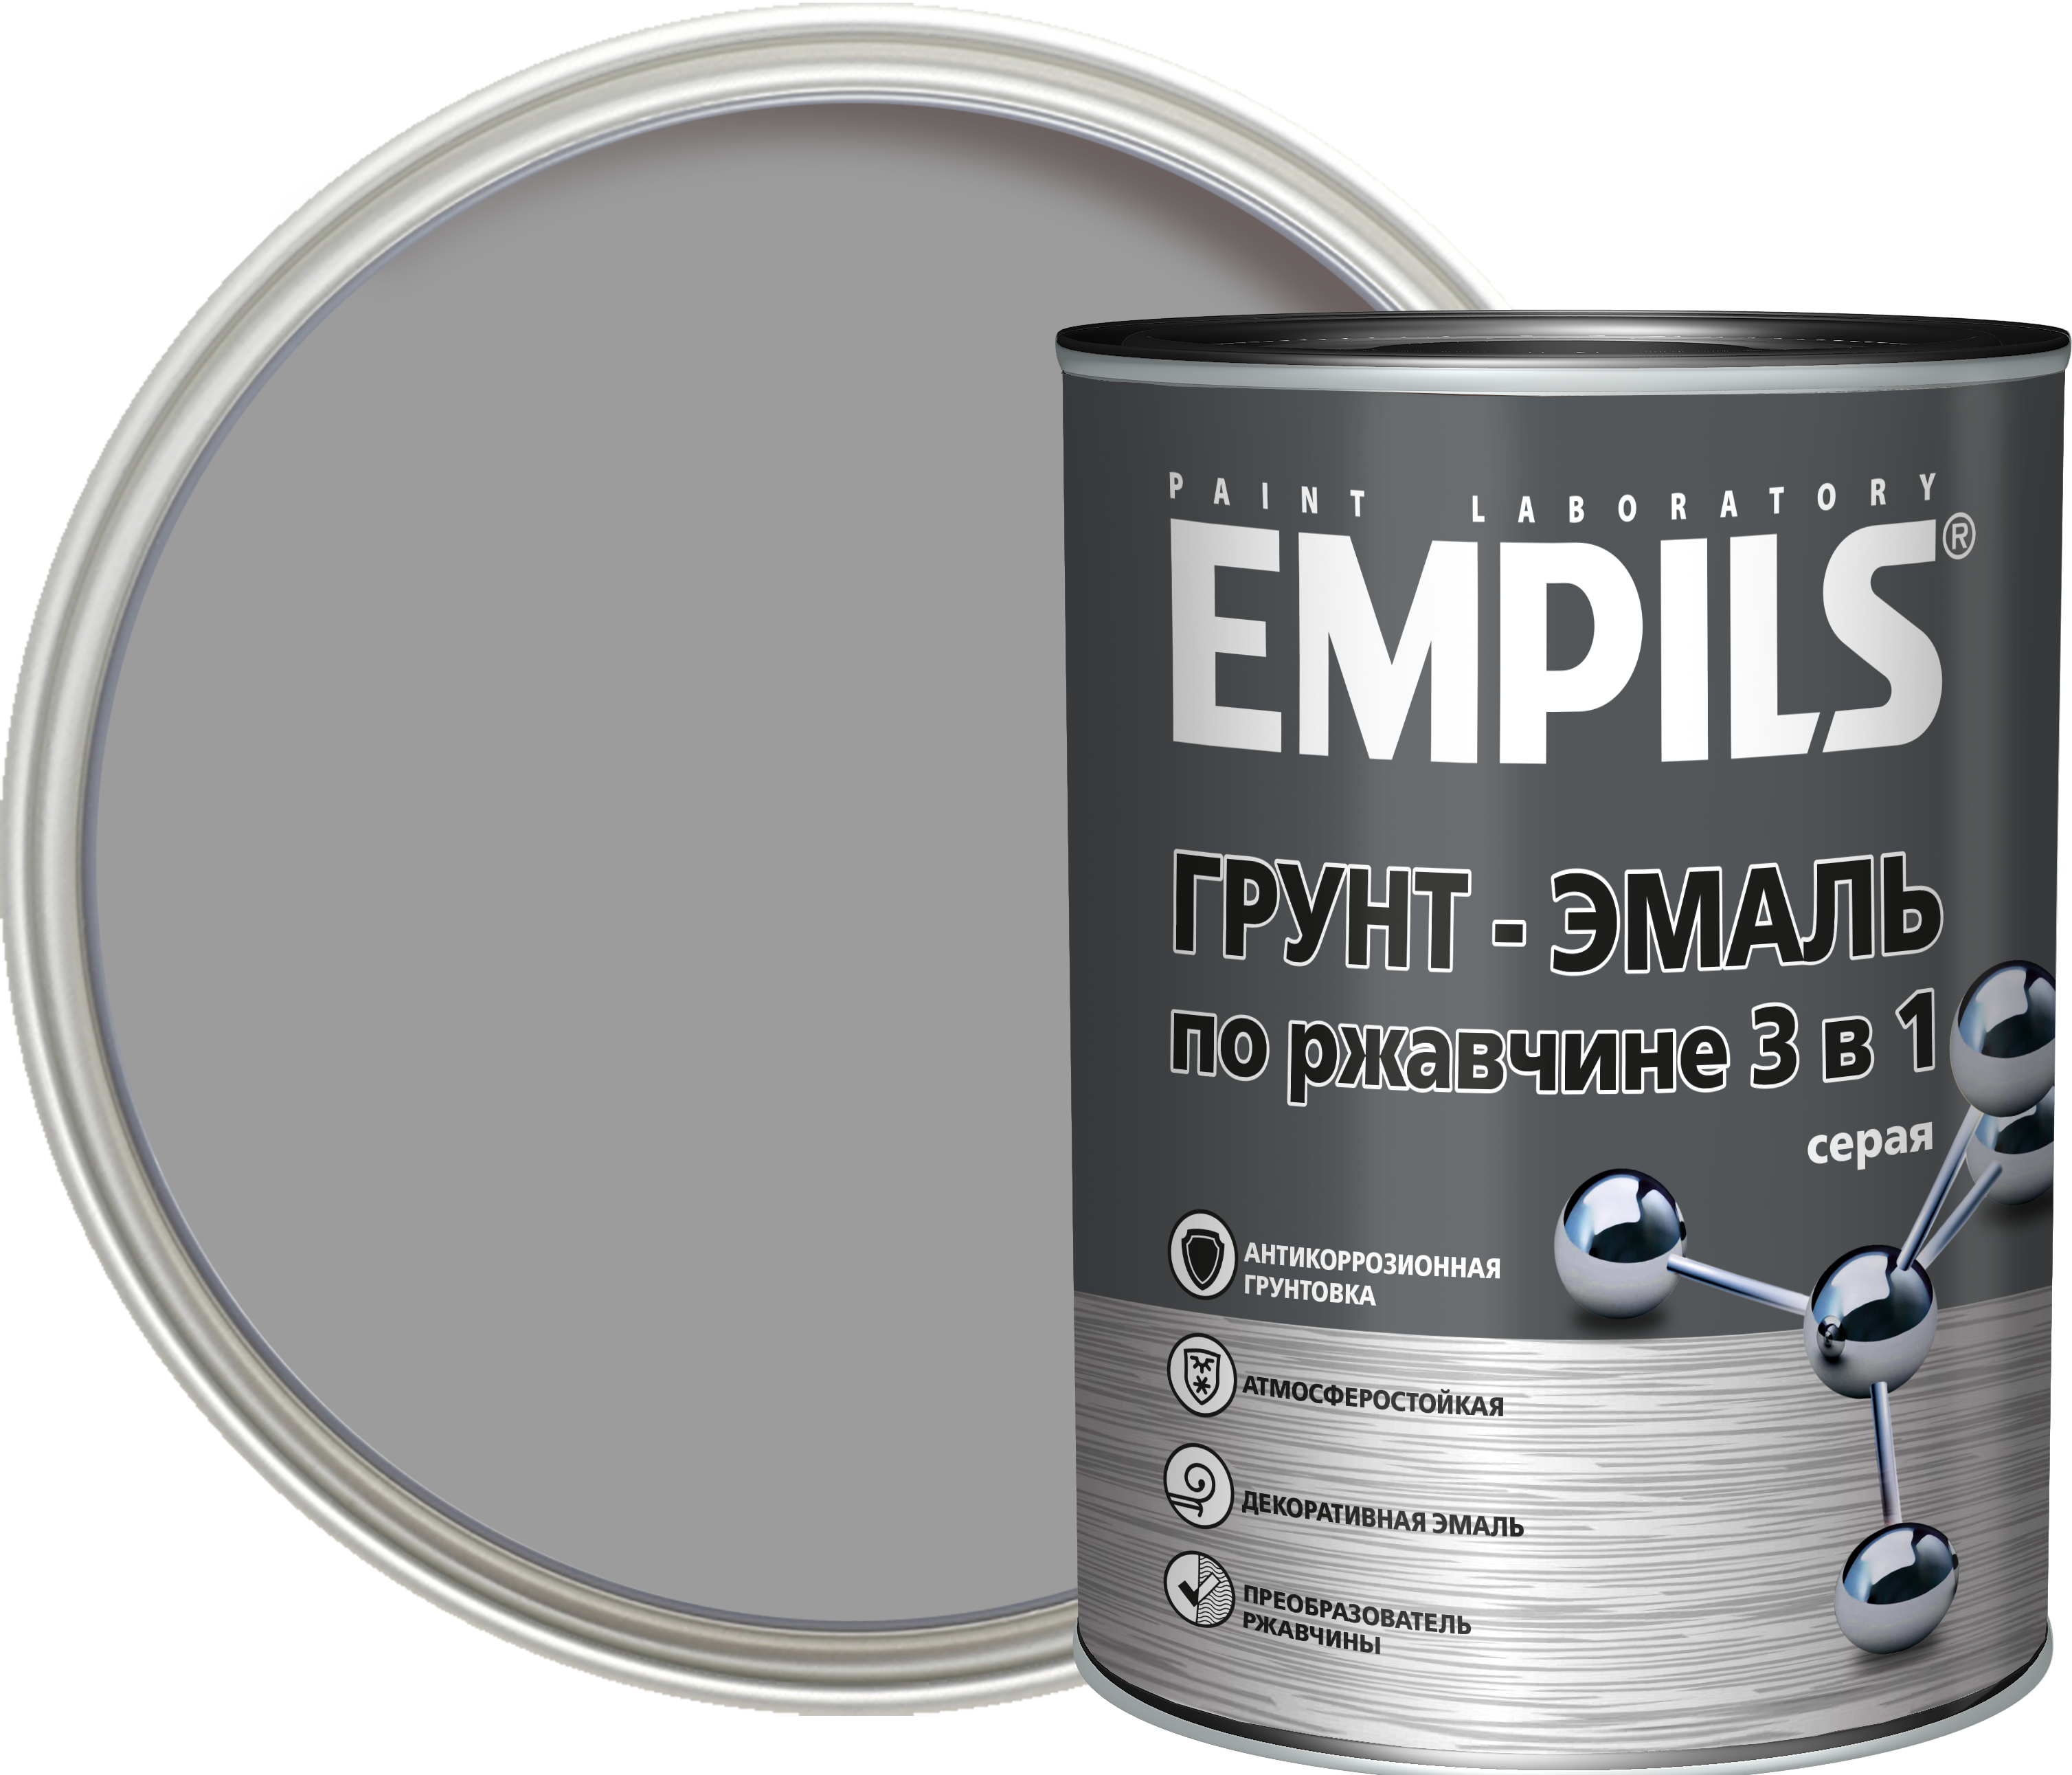 84434180 Грунт-эмаль по ржавчине 3 в 1 PL цвет серый 0.9 кг STLM-0049998 EMPILS